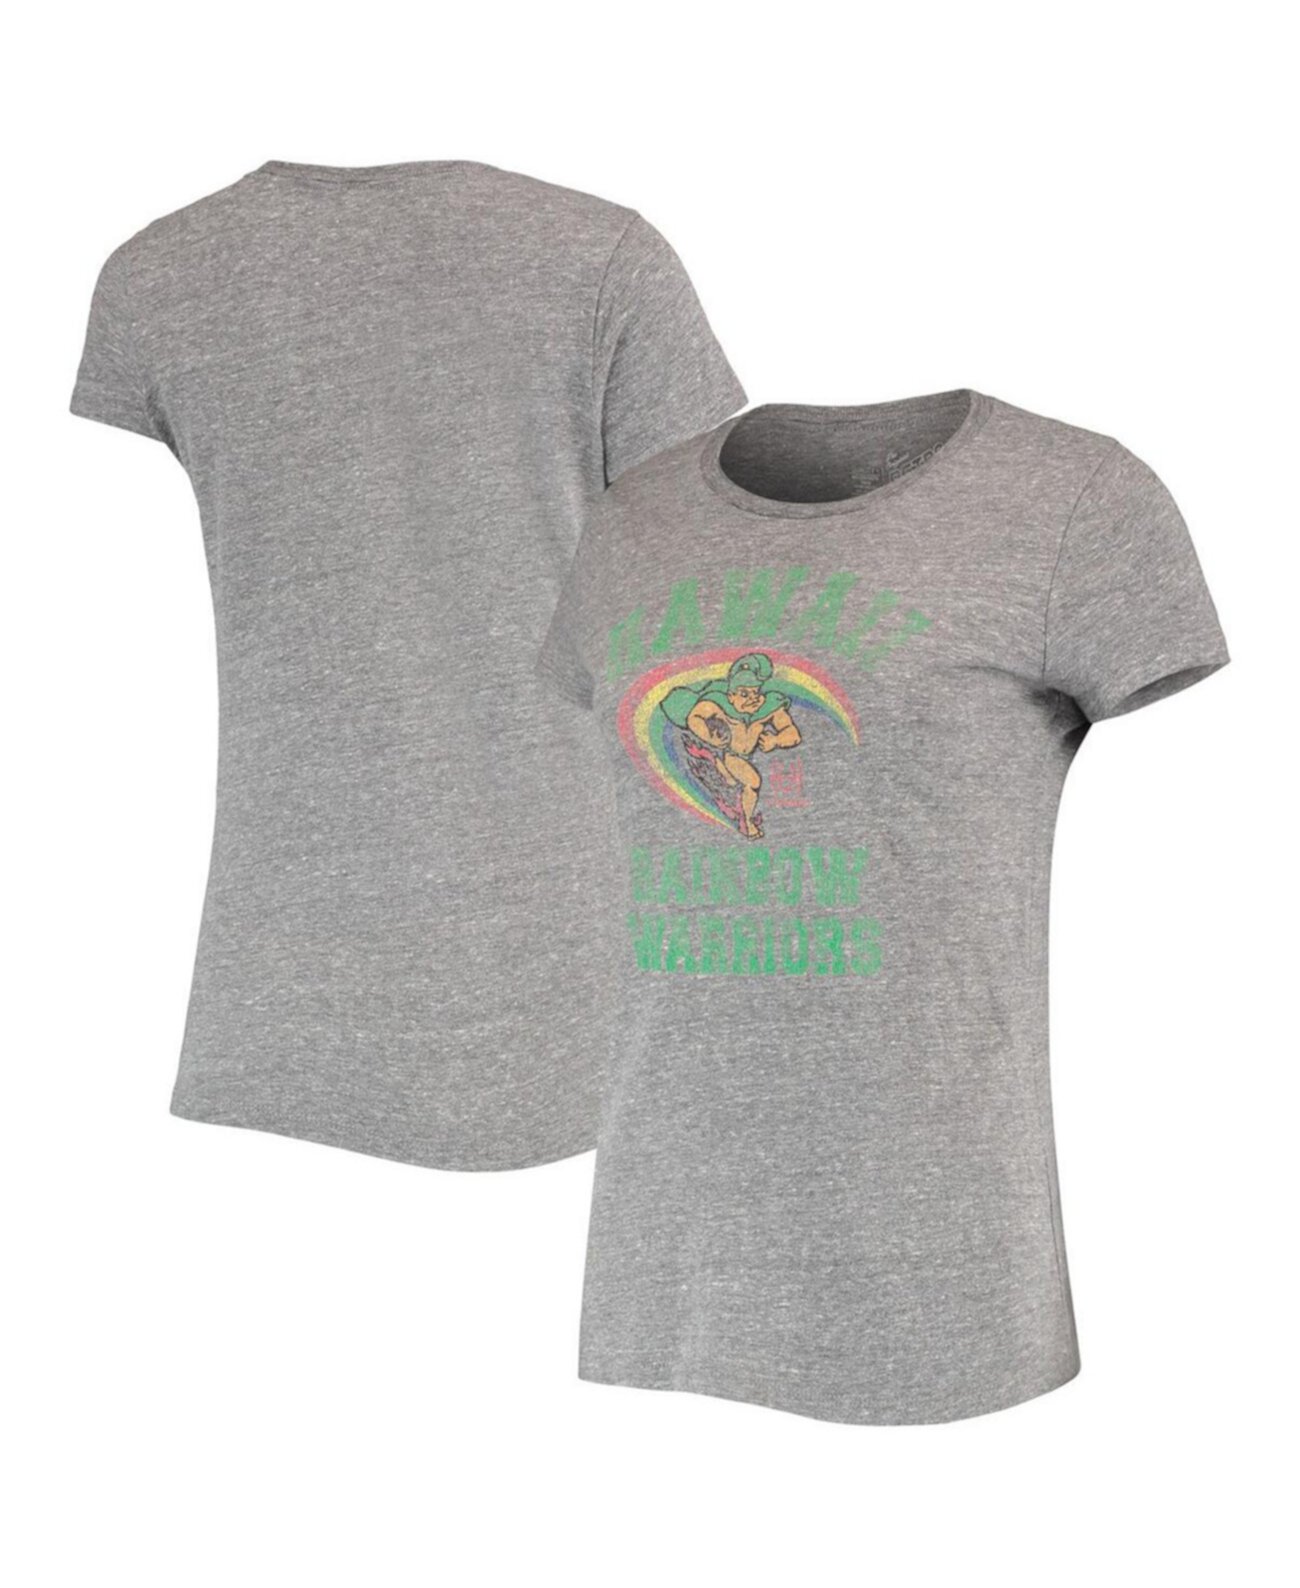 Мужская серая футболка Hawaii Warriors Tri-Blend с меланжевым покрытием Original Retro Brand